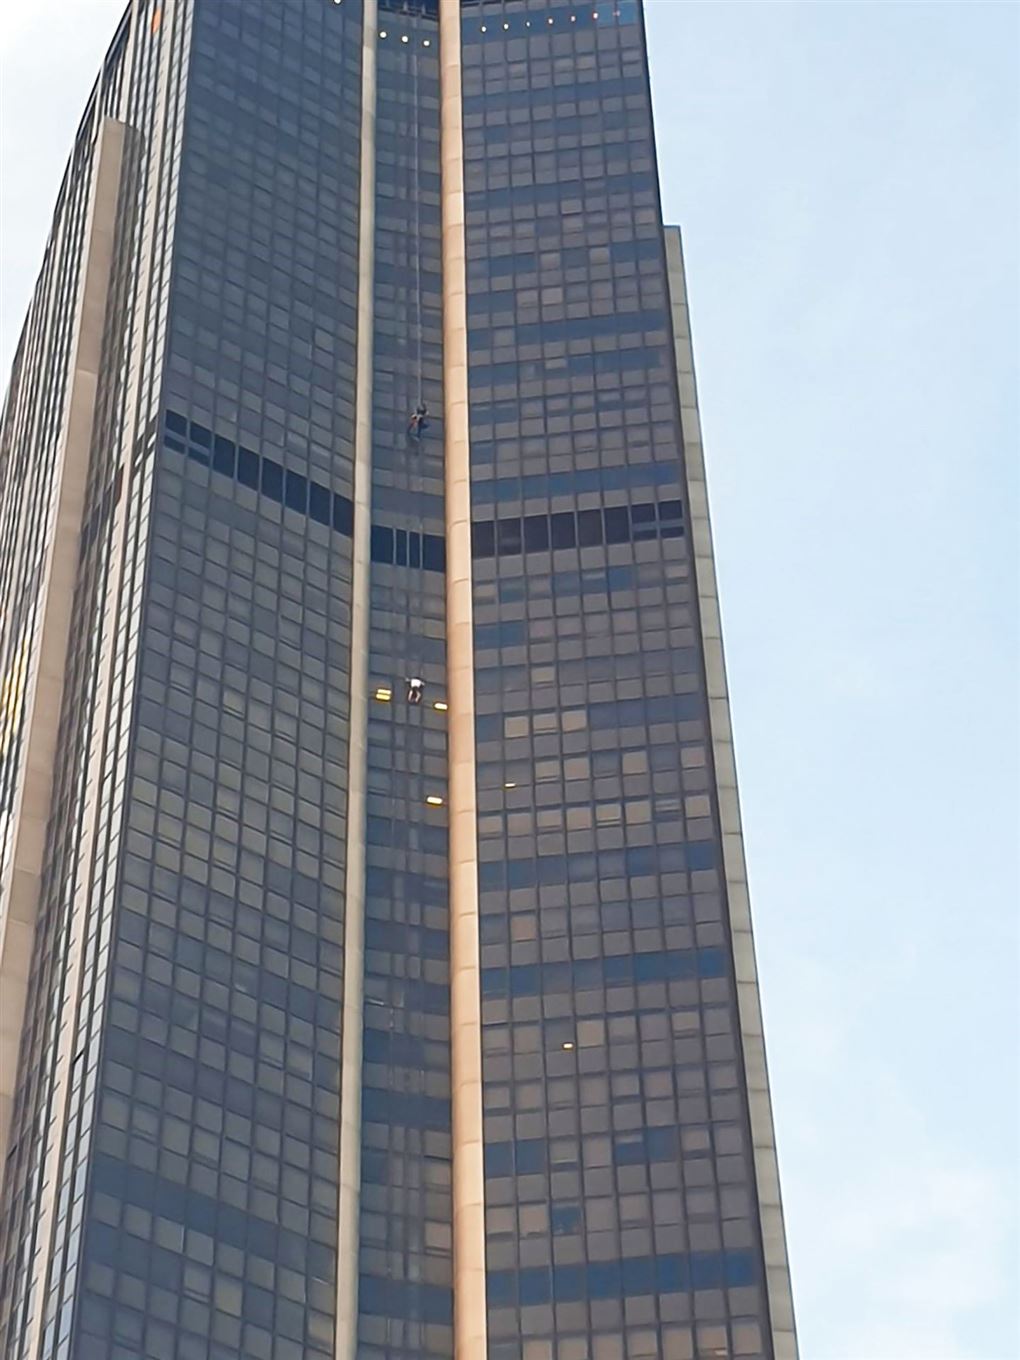 En lille prik viser en mand på vej op ad facaden på en skyskraber